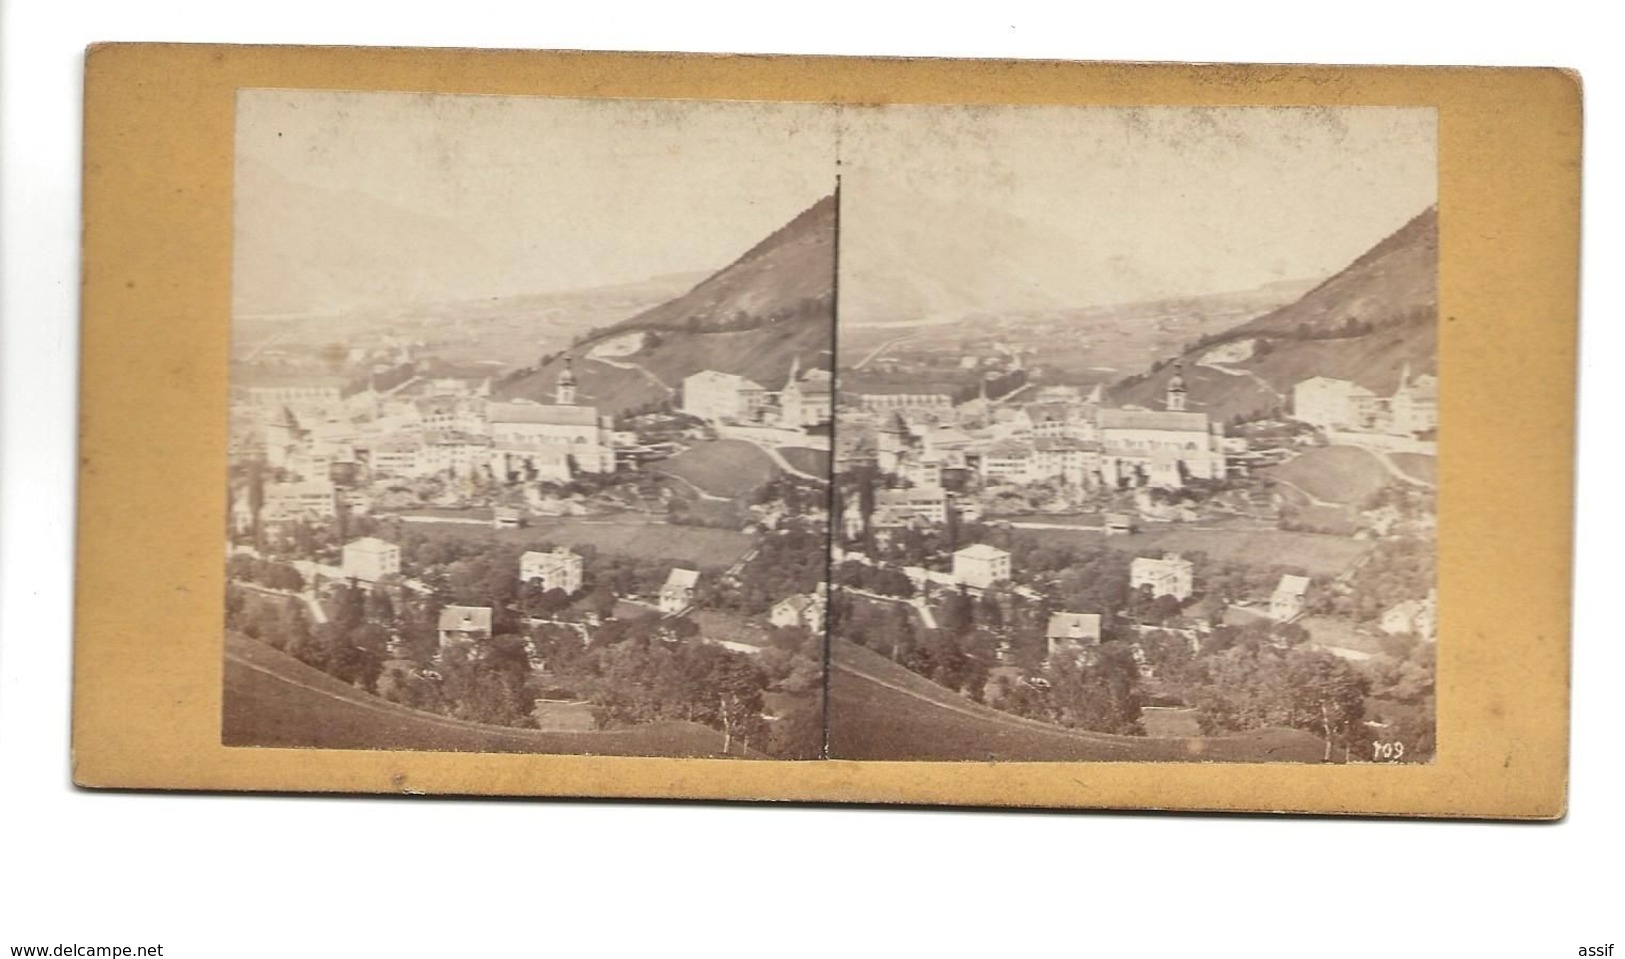 SUISSE COMMUNE DE  COIRE  PHOTO STEREO CIRCA 1860 /FREE SHIPPING R - Stereoscopio